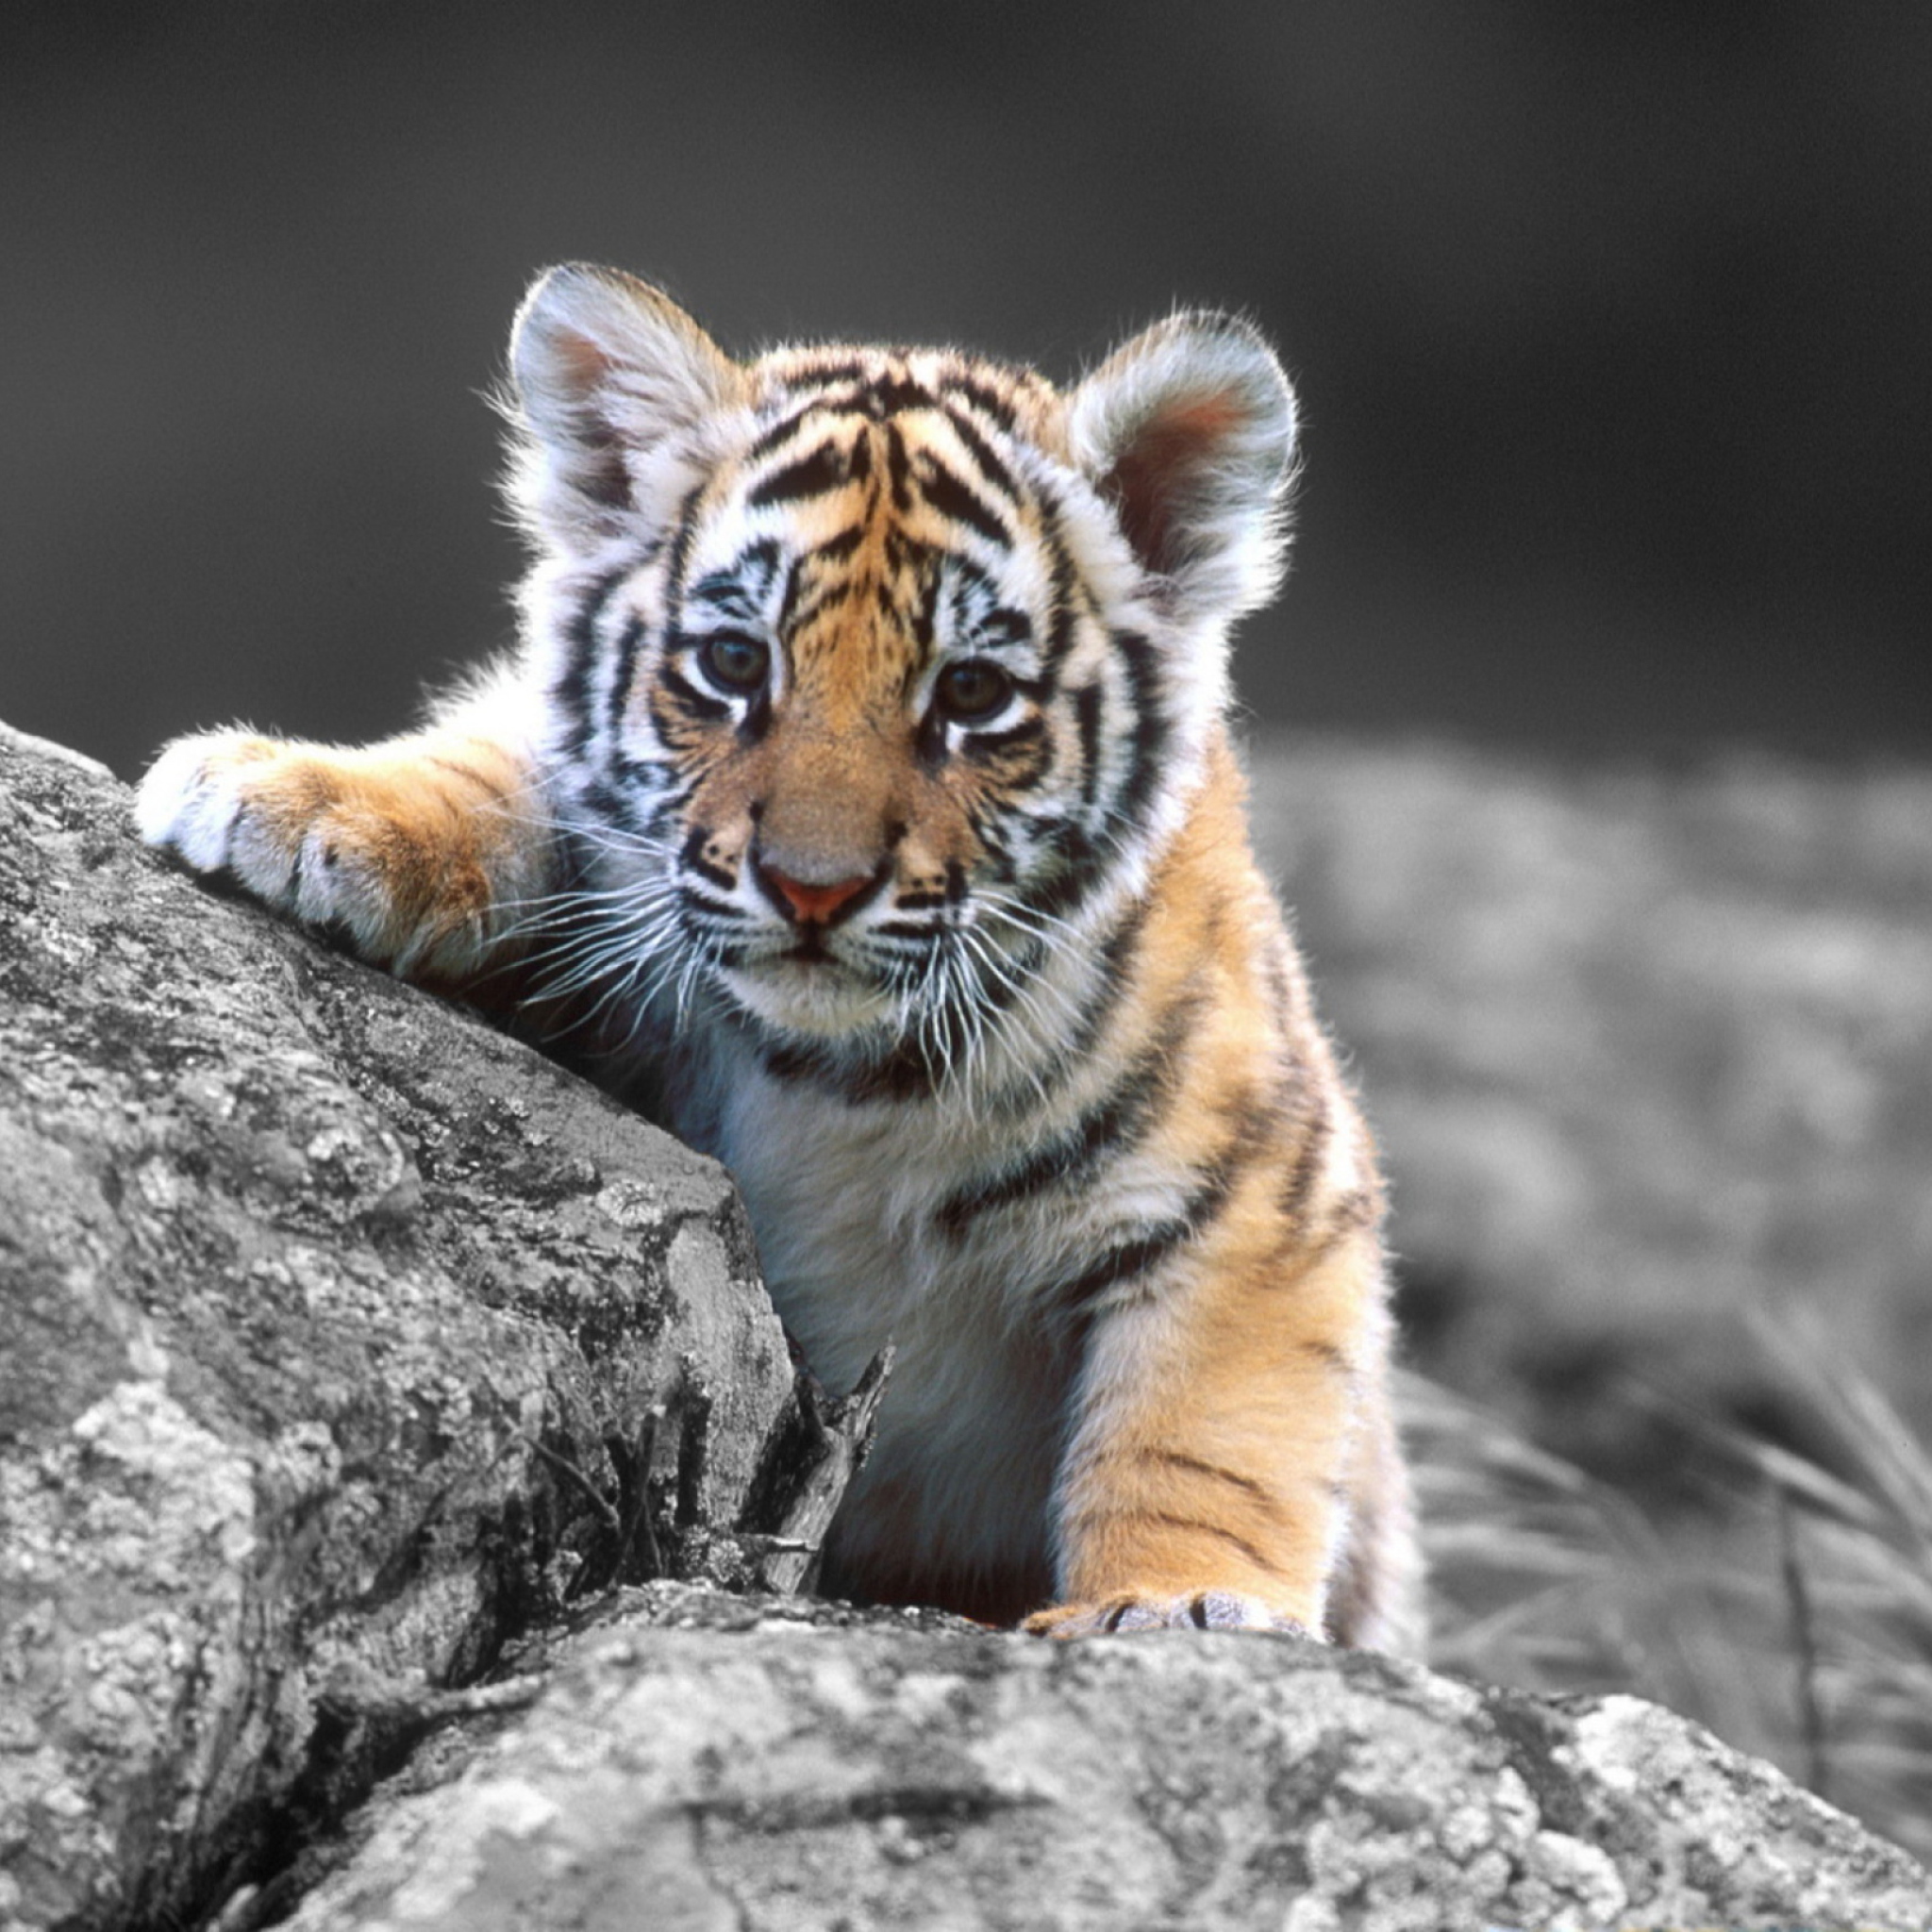 tigers cub wallpaper for ipad air